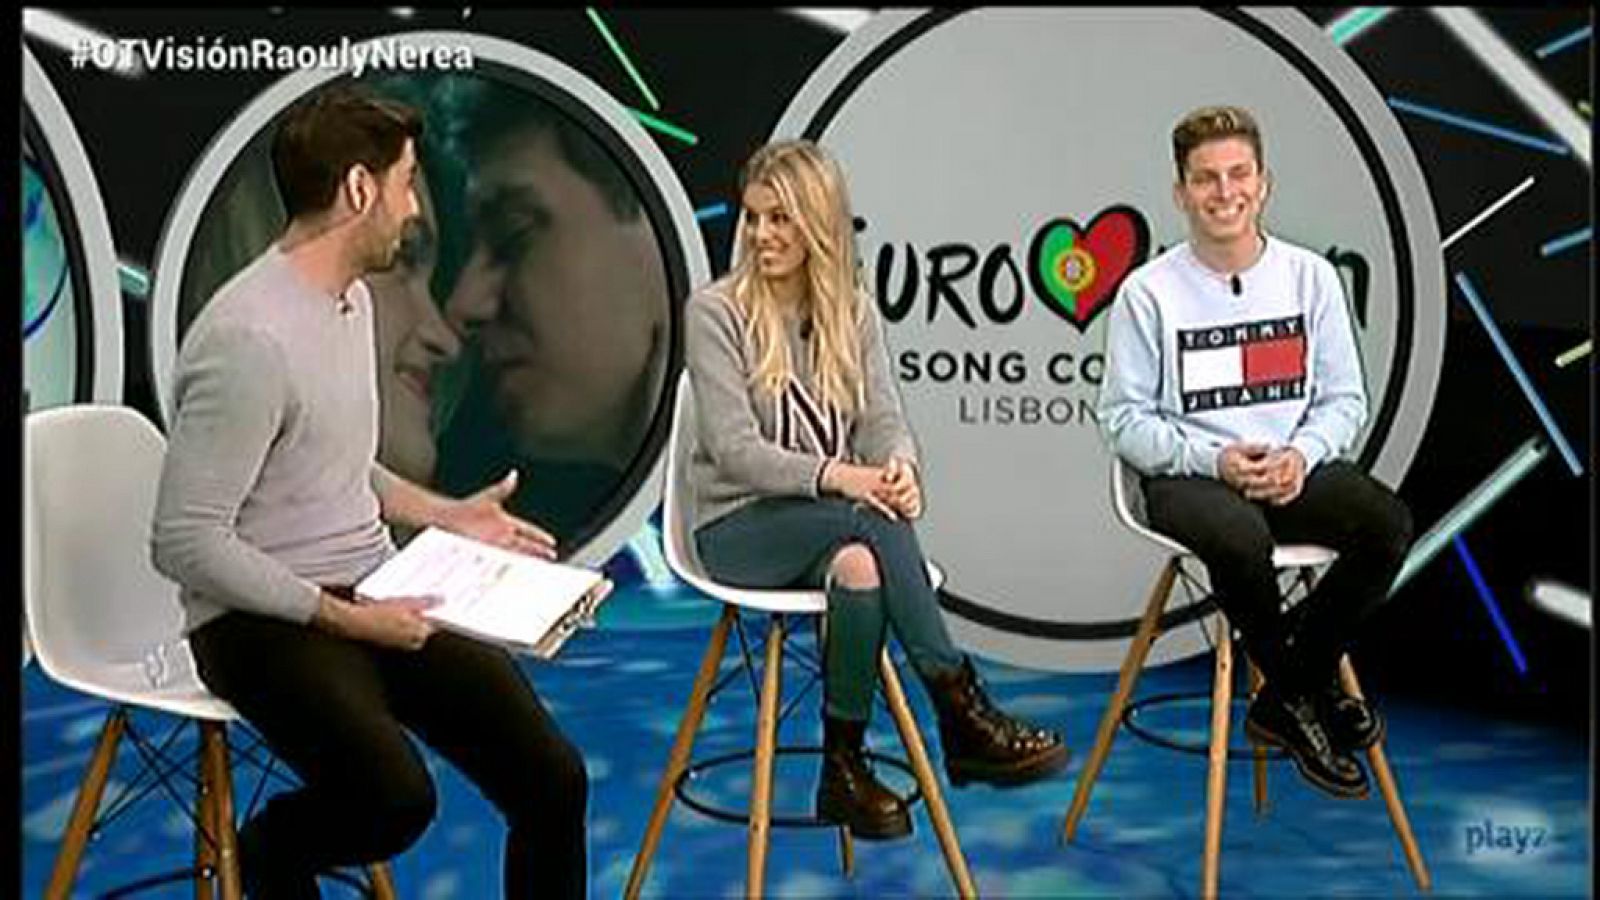 Eurovisión 2018 - Raoul y Nerea: "Seguro que quedamos en el top 10" - OTVisión